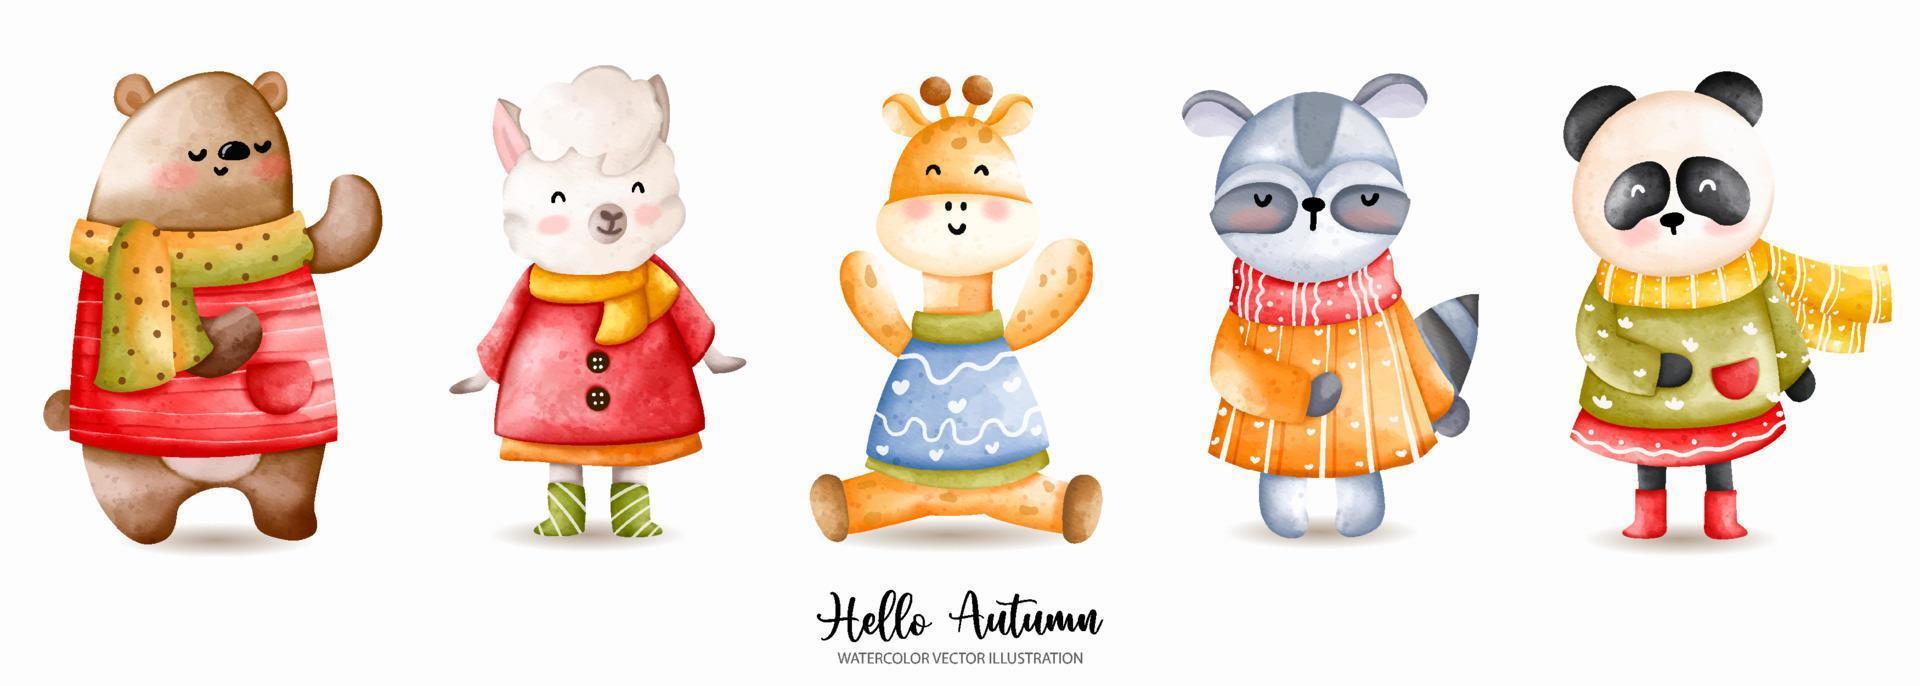 aquarelle d'automne animal, illustration vectorielle de thanksgiving, ours, mouton, girafe, raton laveur, panda vecteur